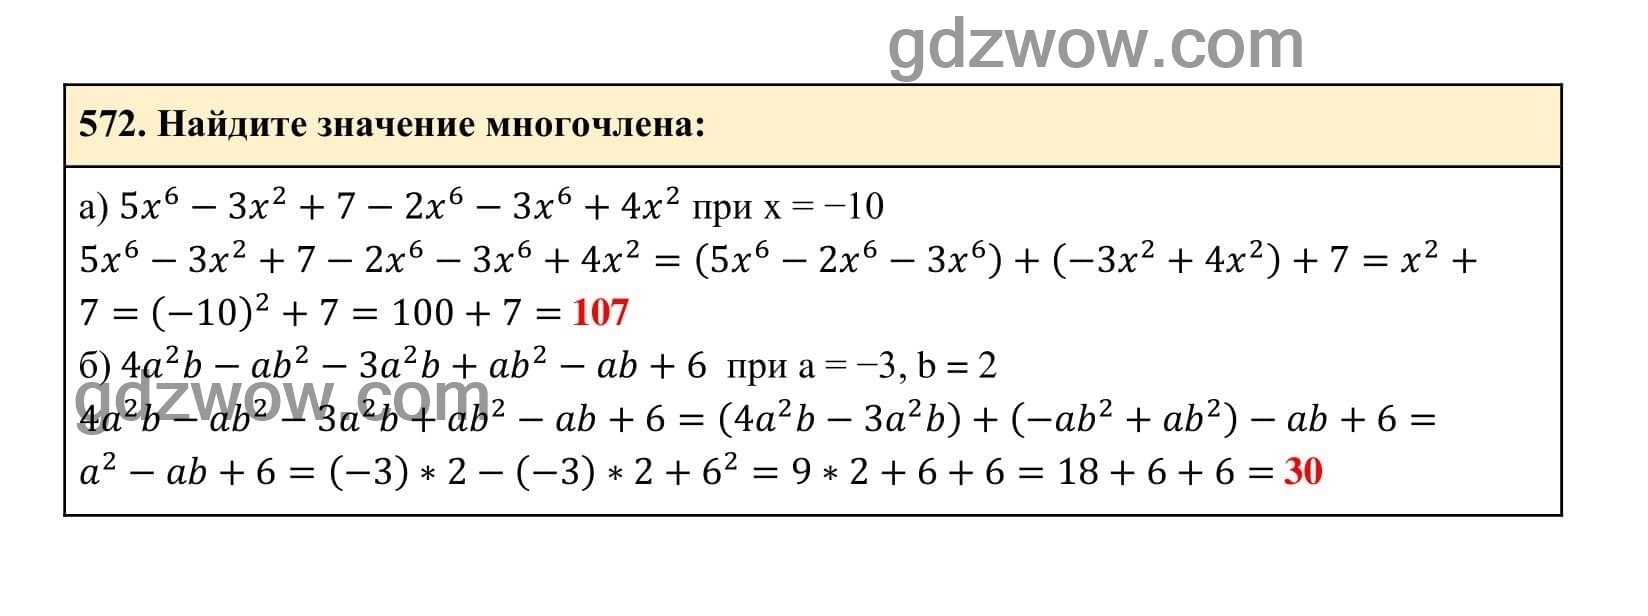 Упражнение 572 - ГДЗ по Алгебре 7 класс Учебник Макарычев (решебник) - GDZwow